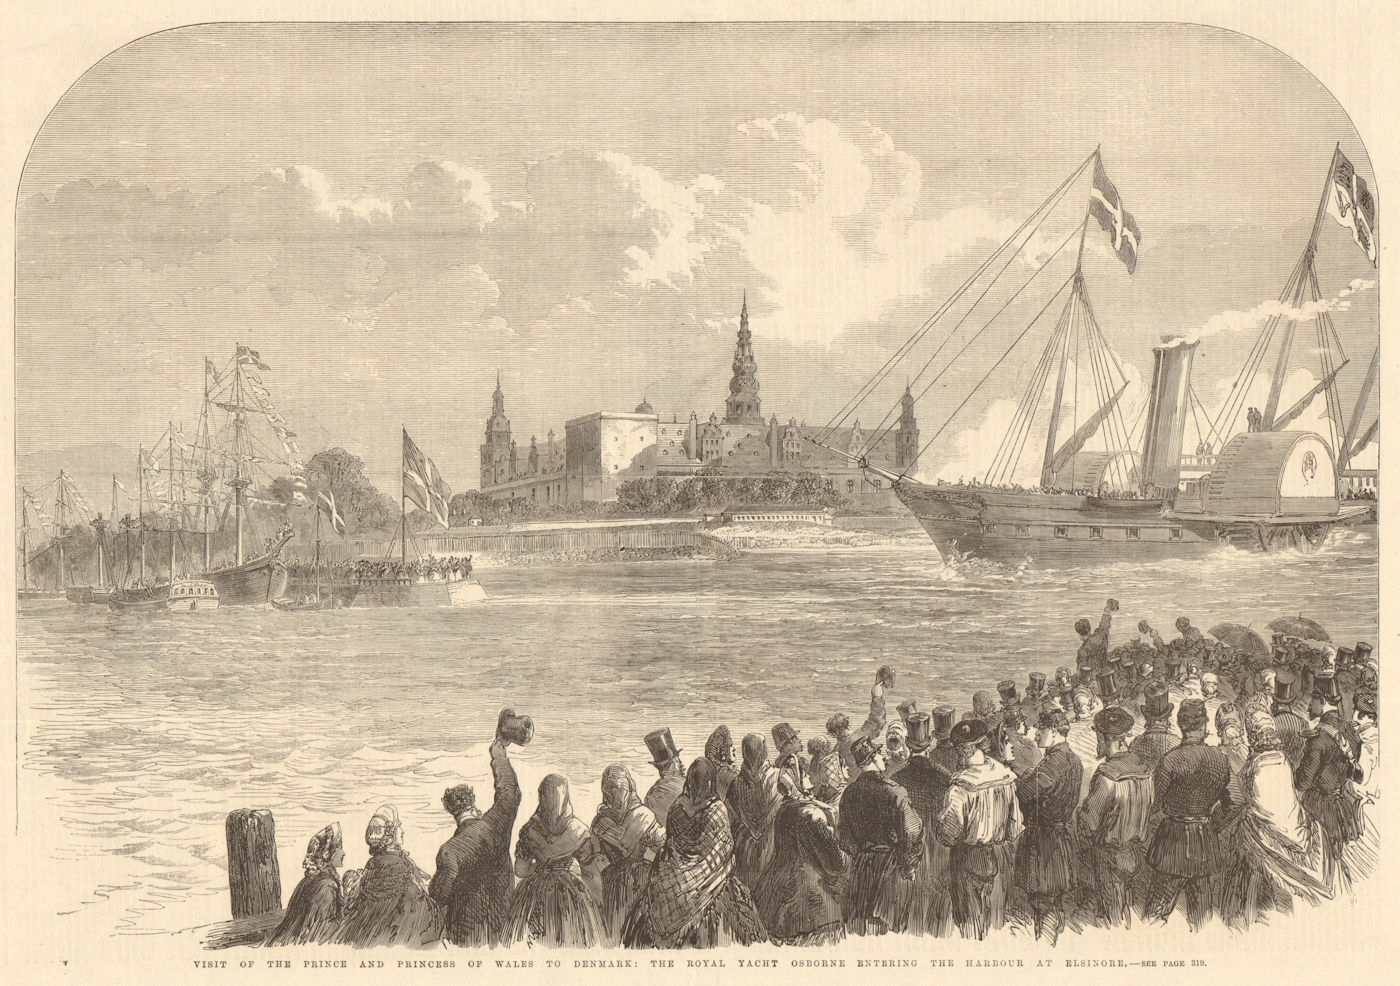 The Royal Yacht Osborne entering the harbour at Helsingor, Denmark 1864